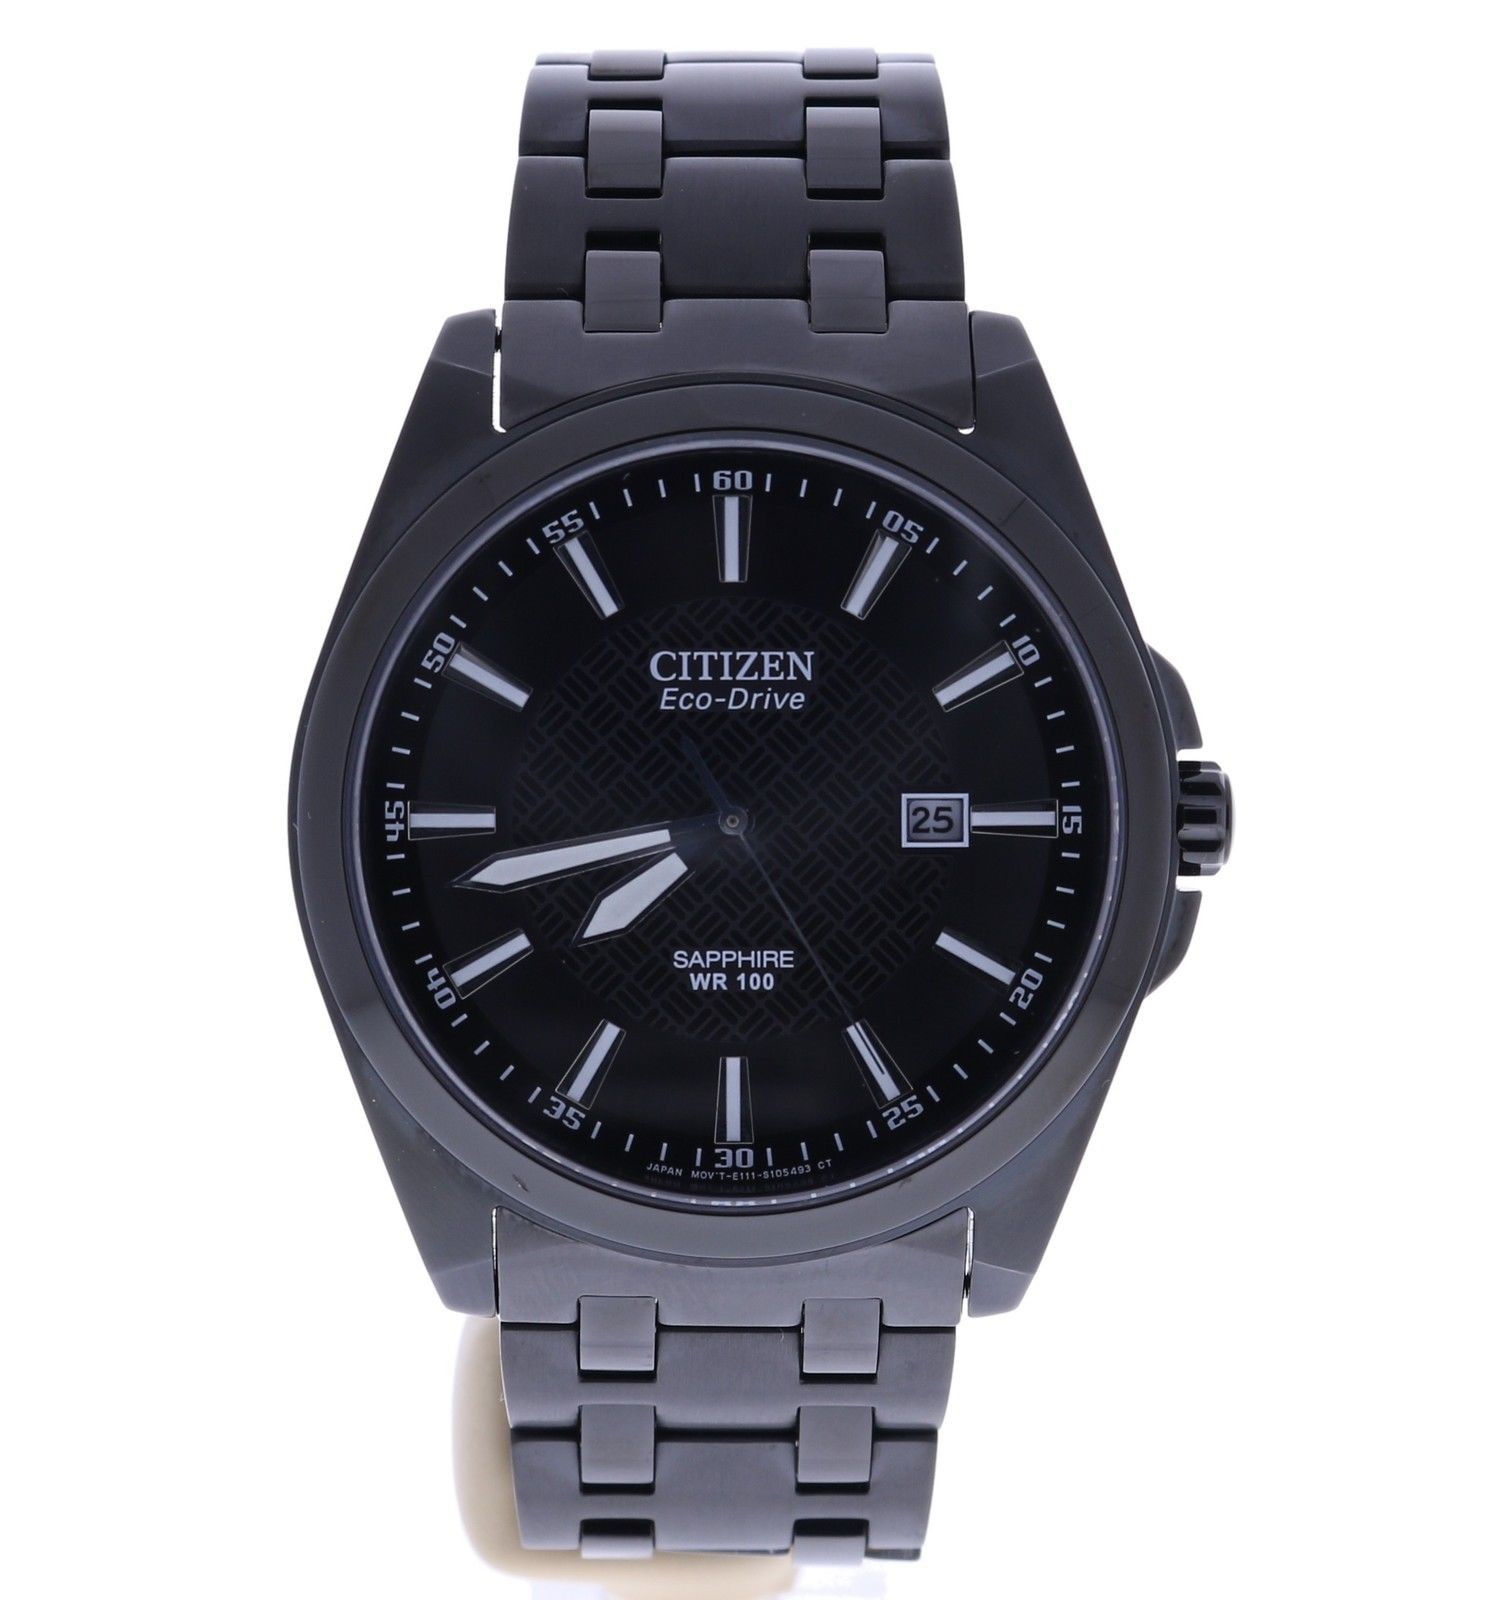 Citizen Eco Drive E111-S087317 wrist watch, SKU: 177332 | Amijag.com